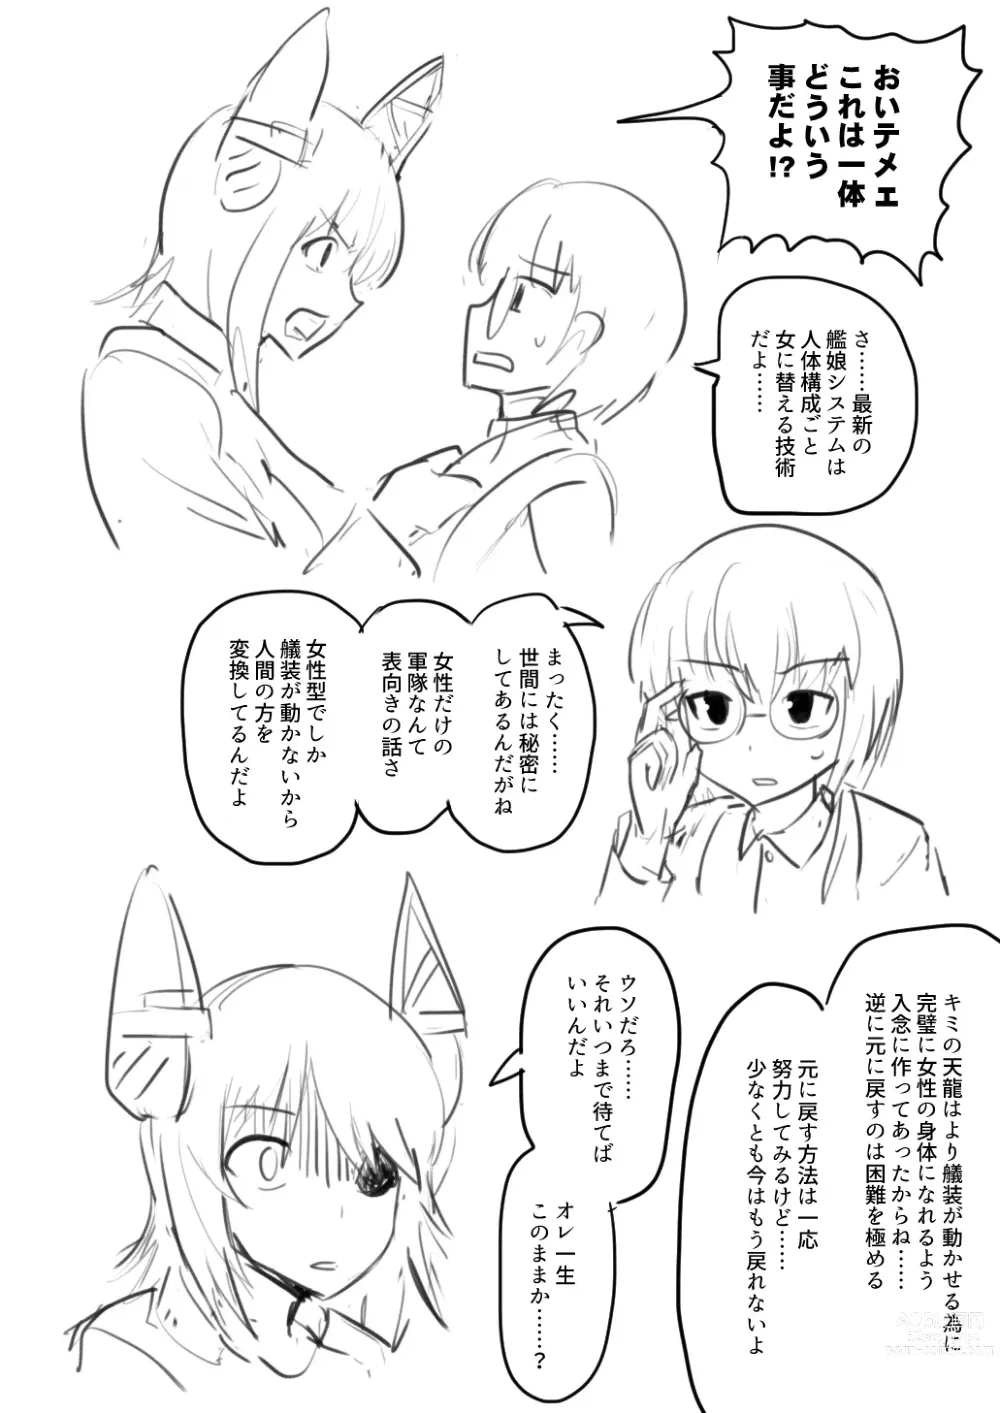 Page 4 of doujinshi Tenryuu TSF